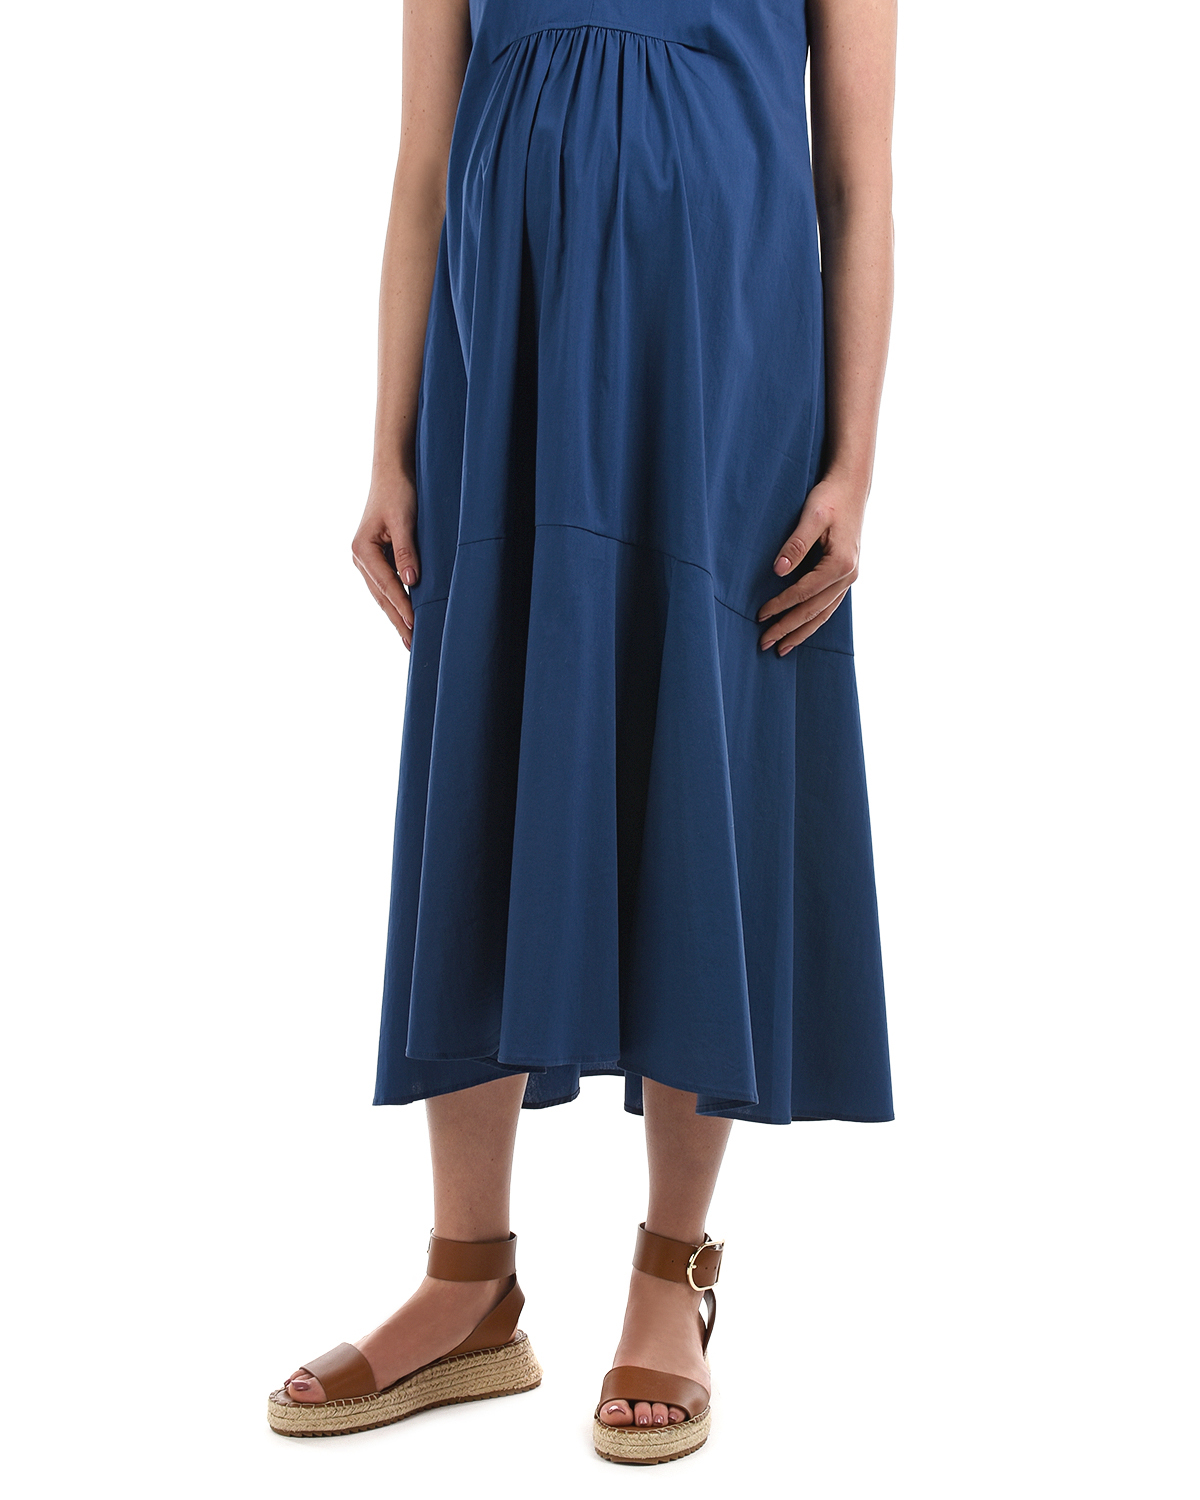 Синее платье с рюшами Attesa, размер 38, цвет синий - фото 8